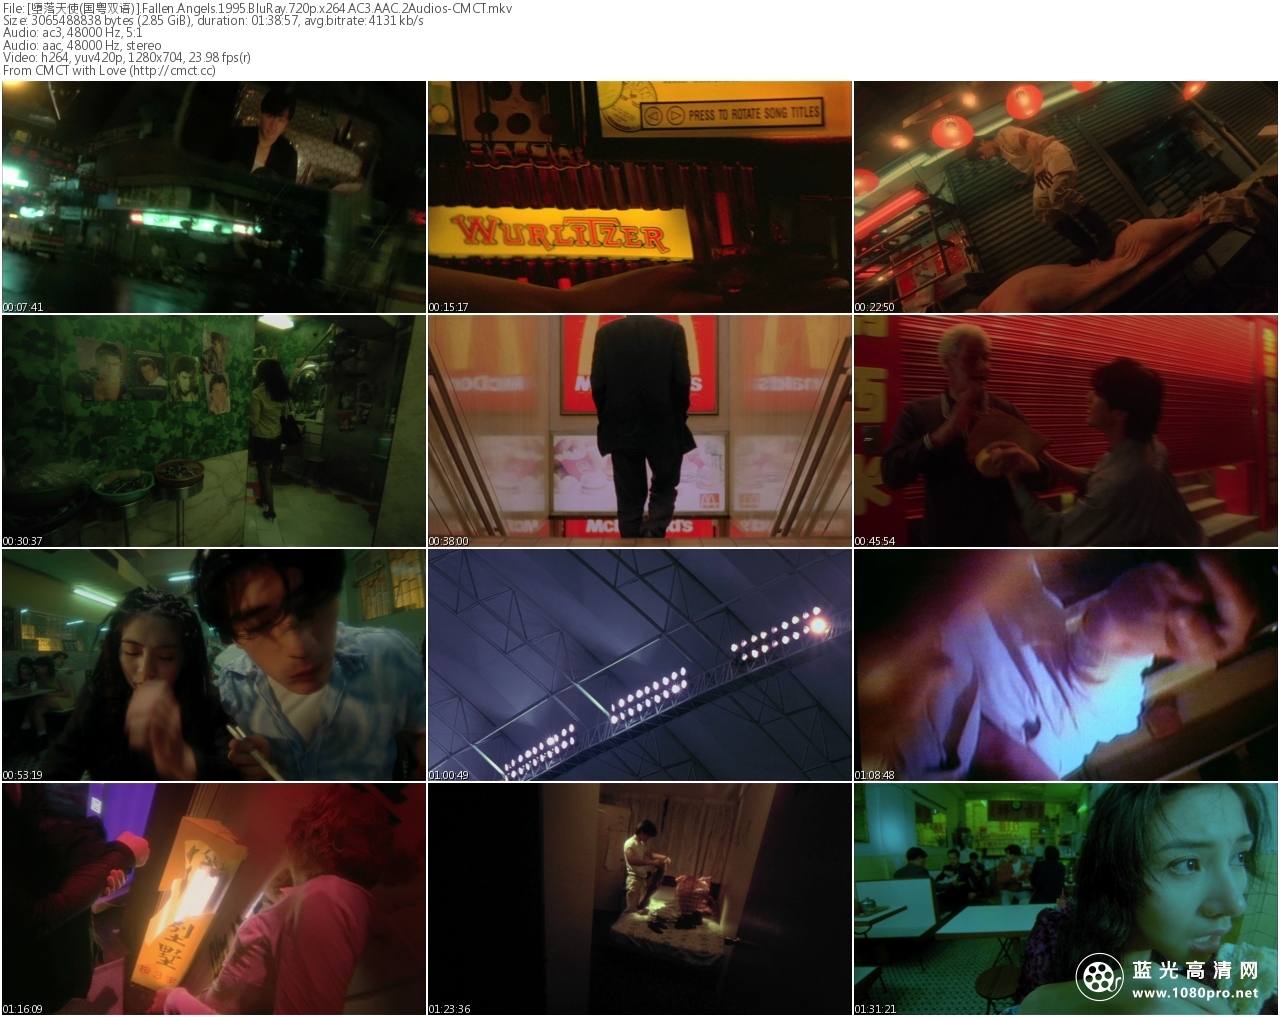 [堕落天使].1995.BluRay.720p.x264.AC3.AAC.2Audios-CMCT[国粤双语/简繁中字/2.9G]-2.jpg